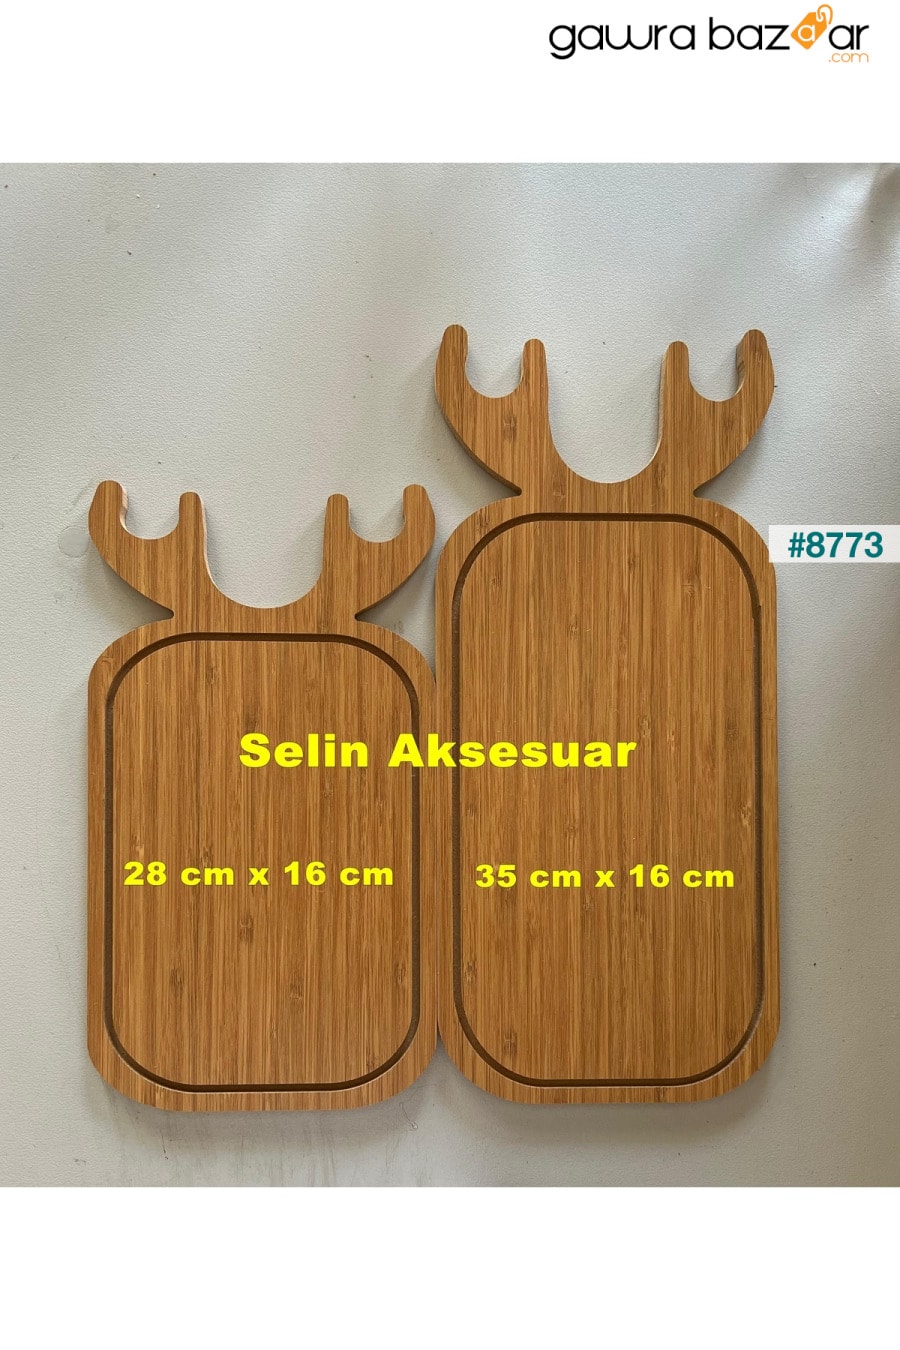 لوح عرض خشبي للتقطيع والتقطيع مكون من قطعتين على شكل غزال ومجموعة أطباق تقديم selinaksesuar 1